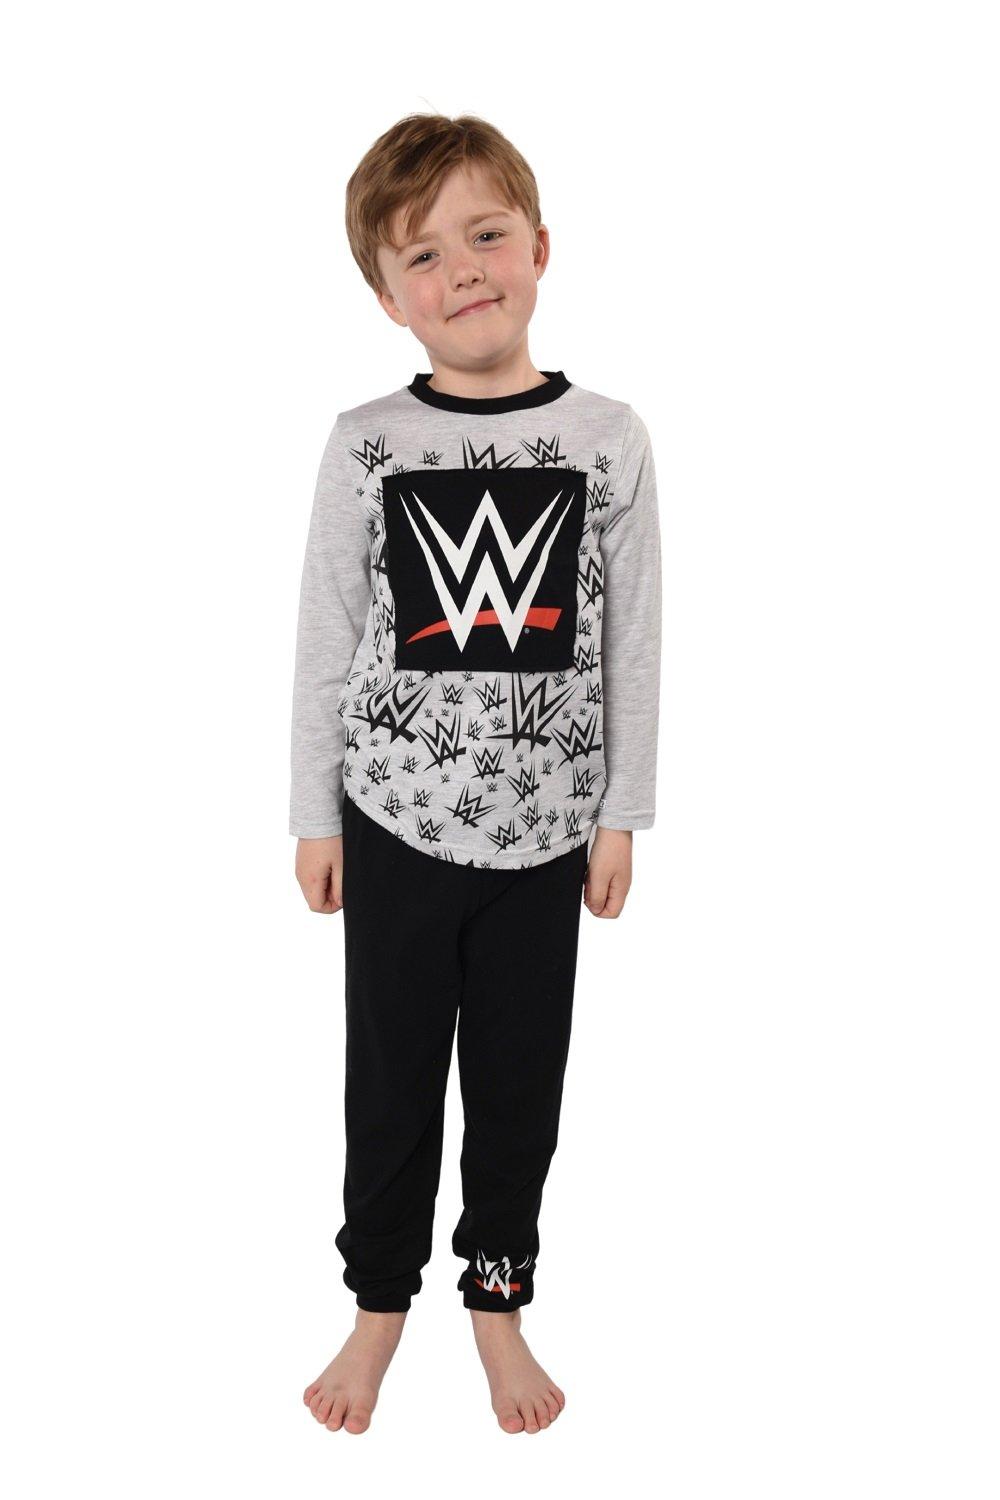 WWE Pyjama